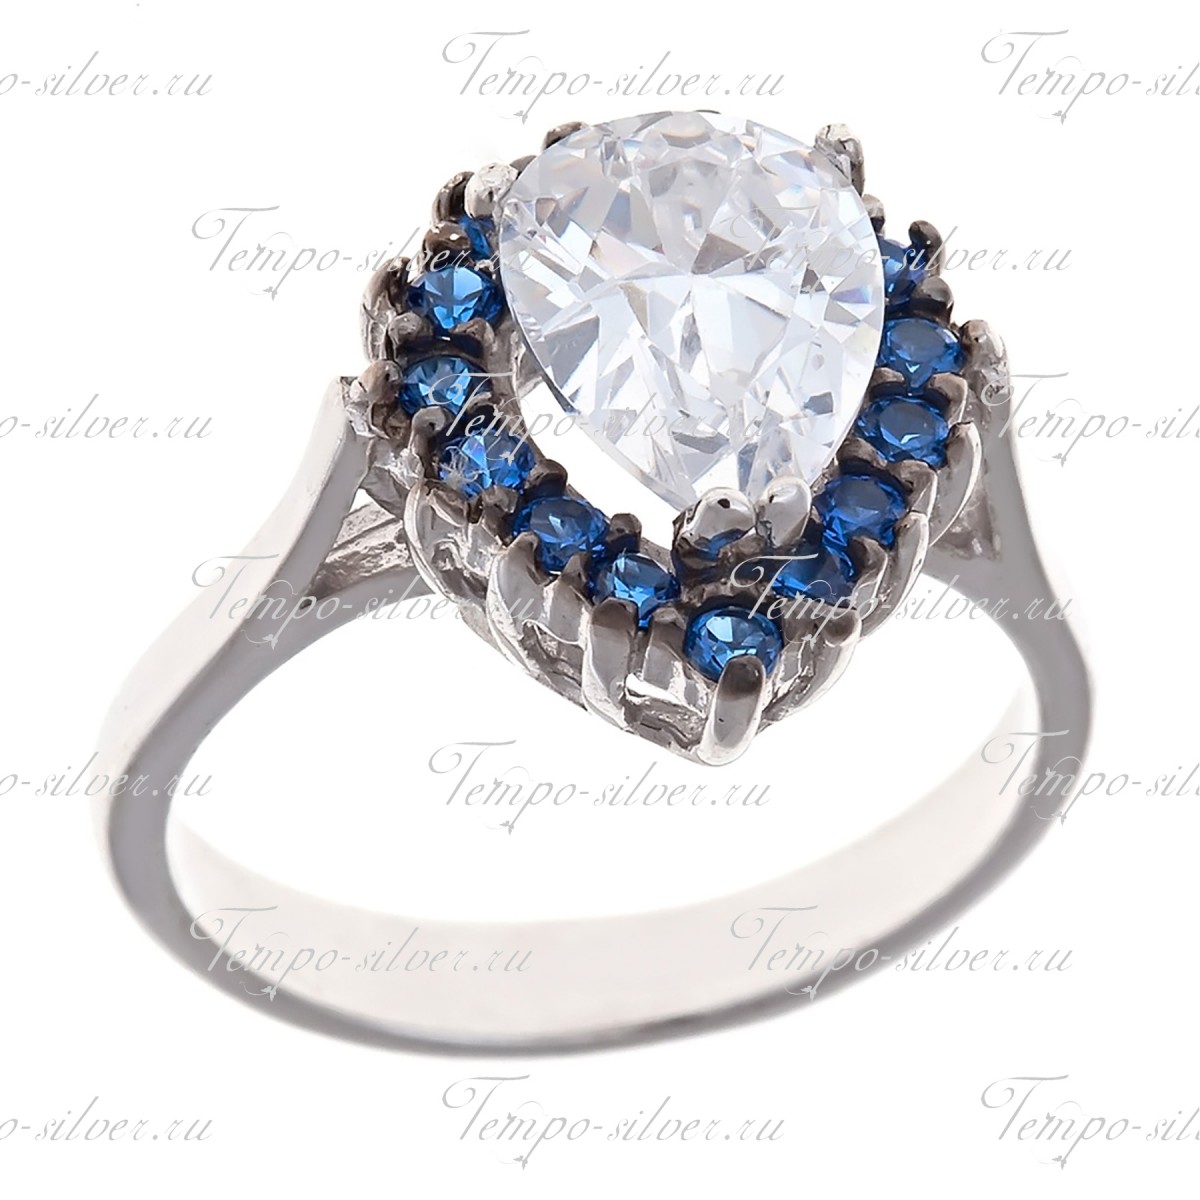 Кольцо в форме капли с синими камнями по контуру цена